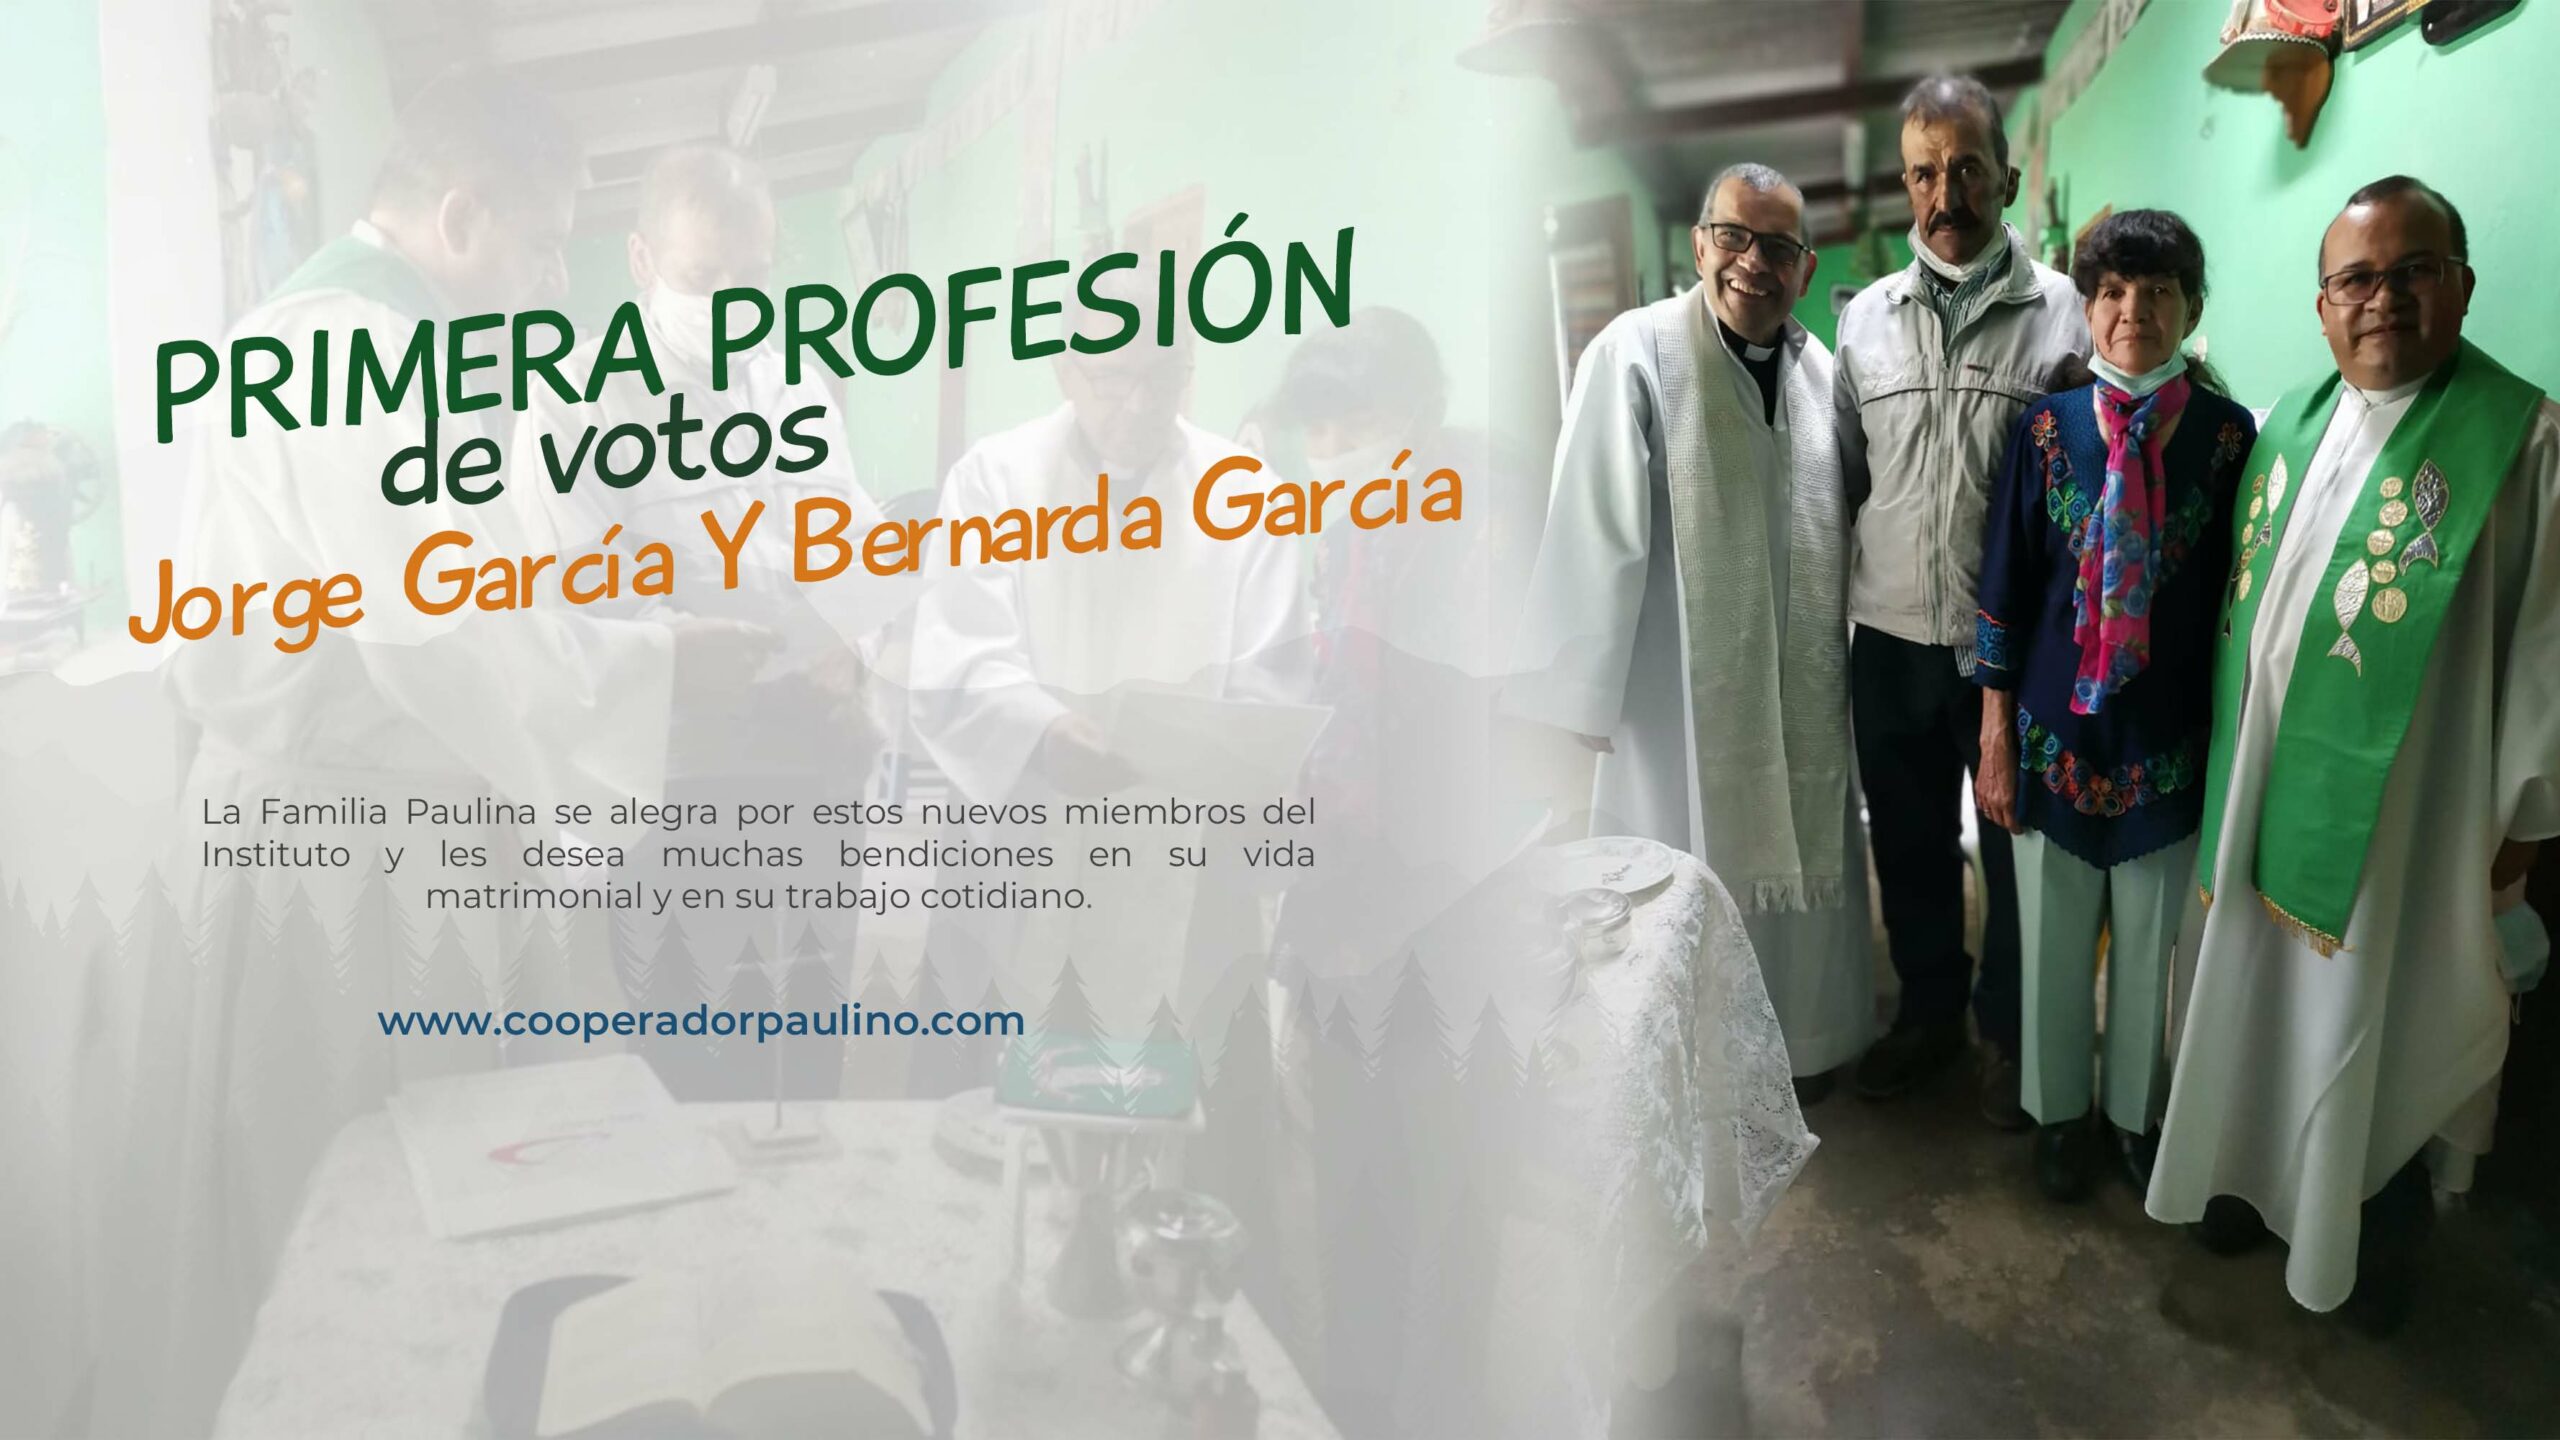 PRIMERA PROFESIÓN DE VOTOS JORGE GARCÍA Y BERNARDA GARCÍA